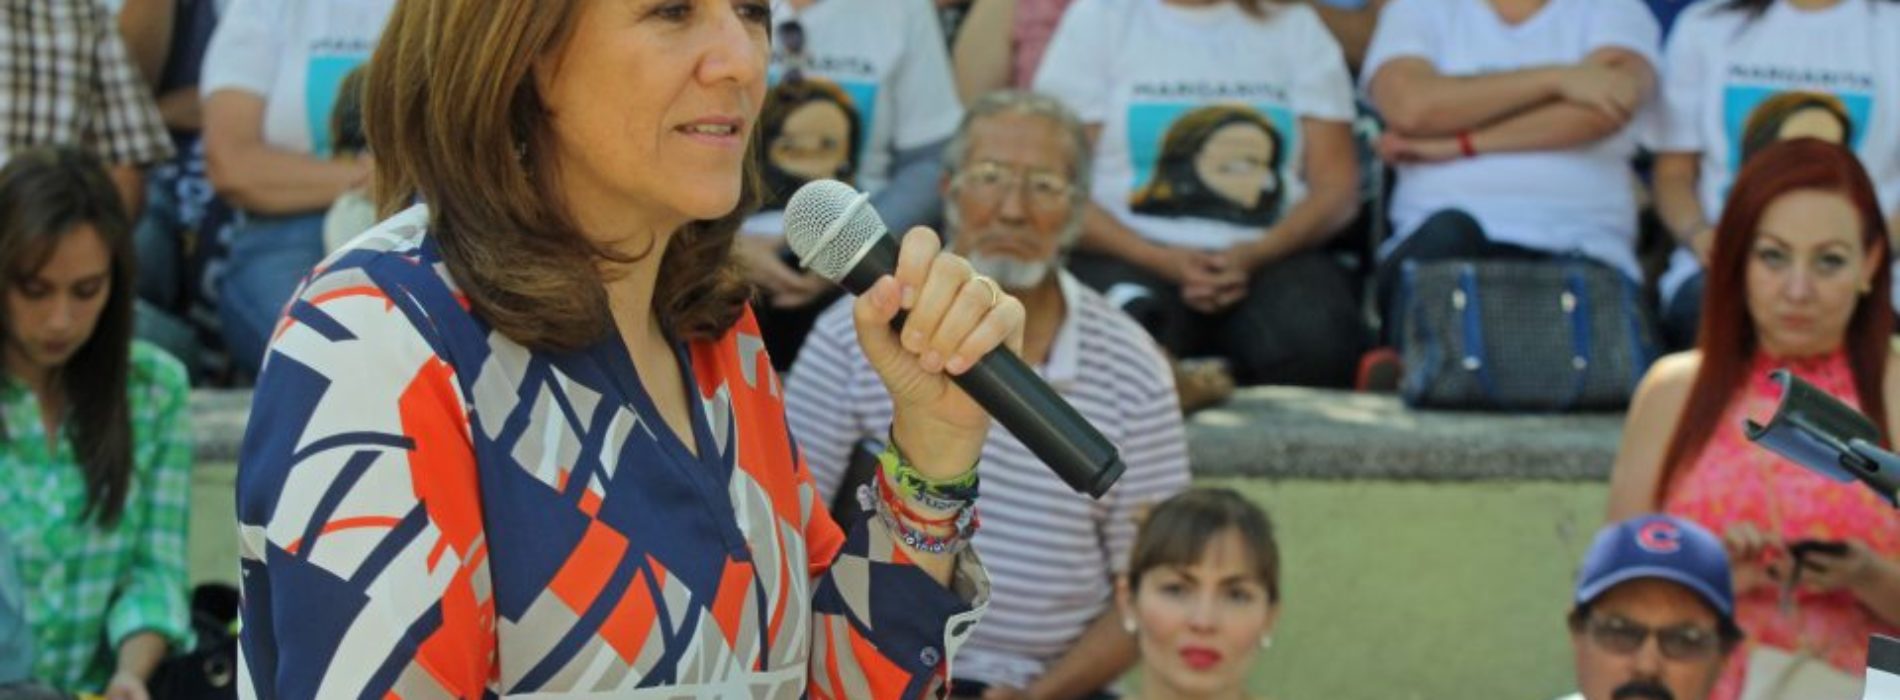 Fausto Barajas, el alfil calderonista que busca que los
panistas voten por Margarita Zavala